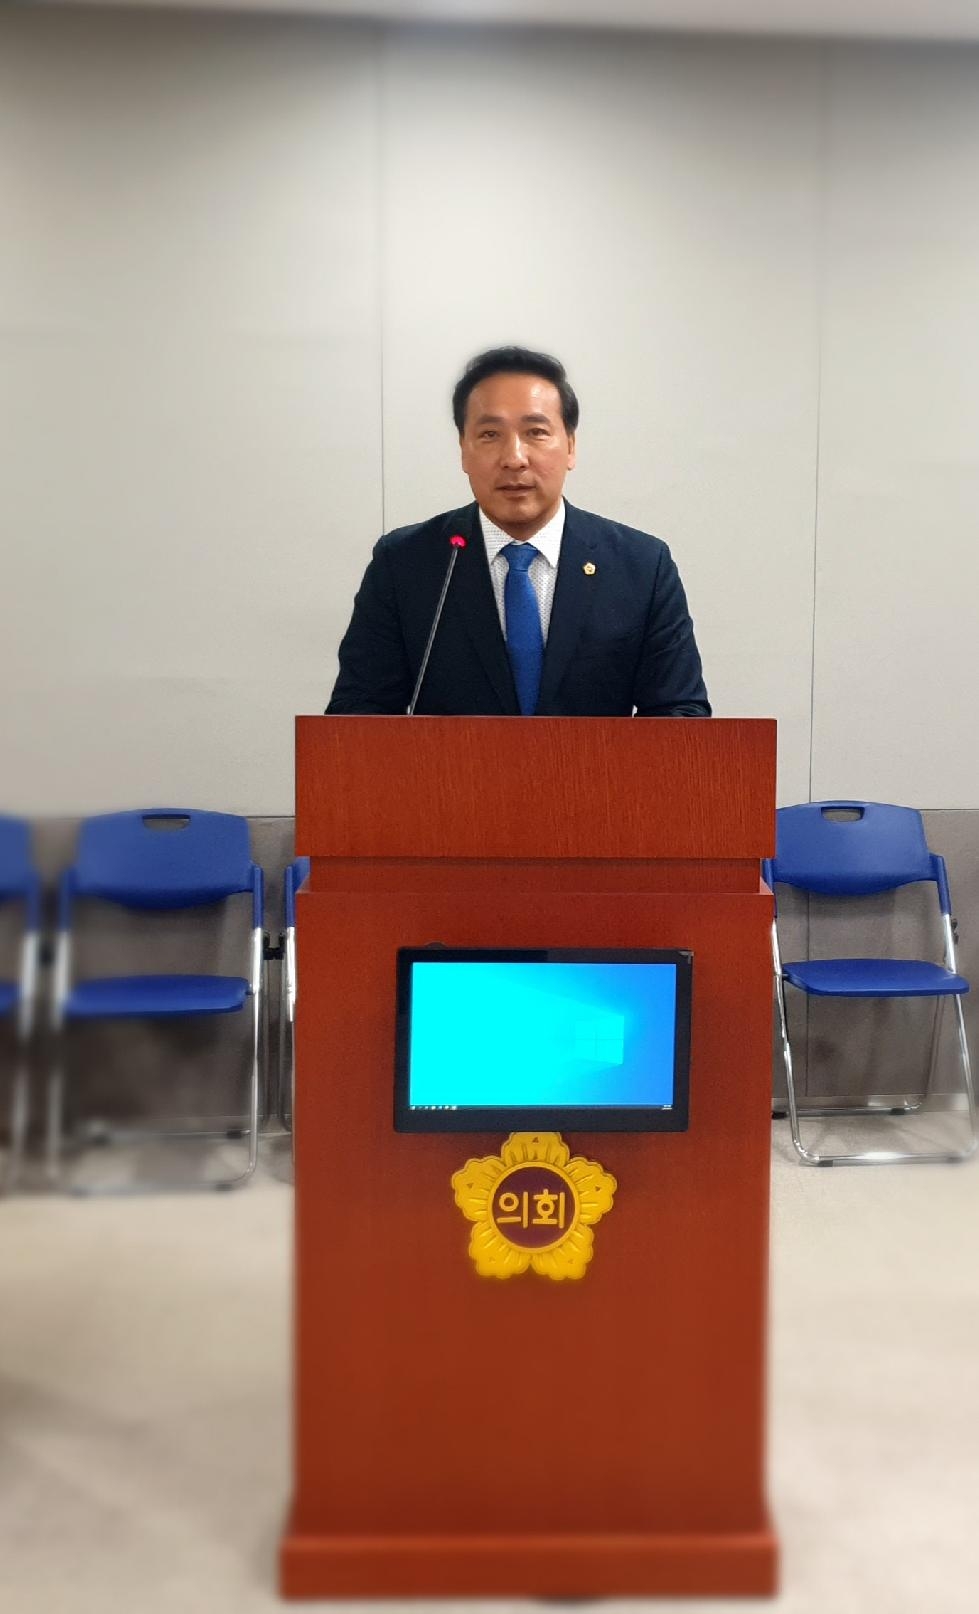 경기도의회 김용성 의원, 집합건물 관리 및 분쟁조정 실효성 제고 위한 ‘